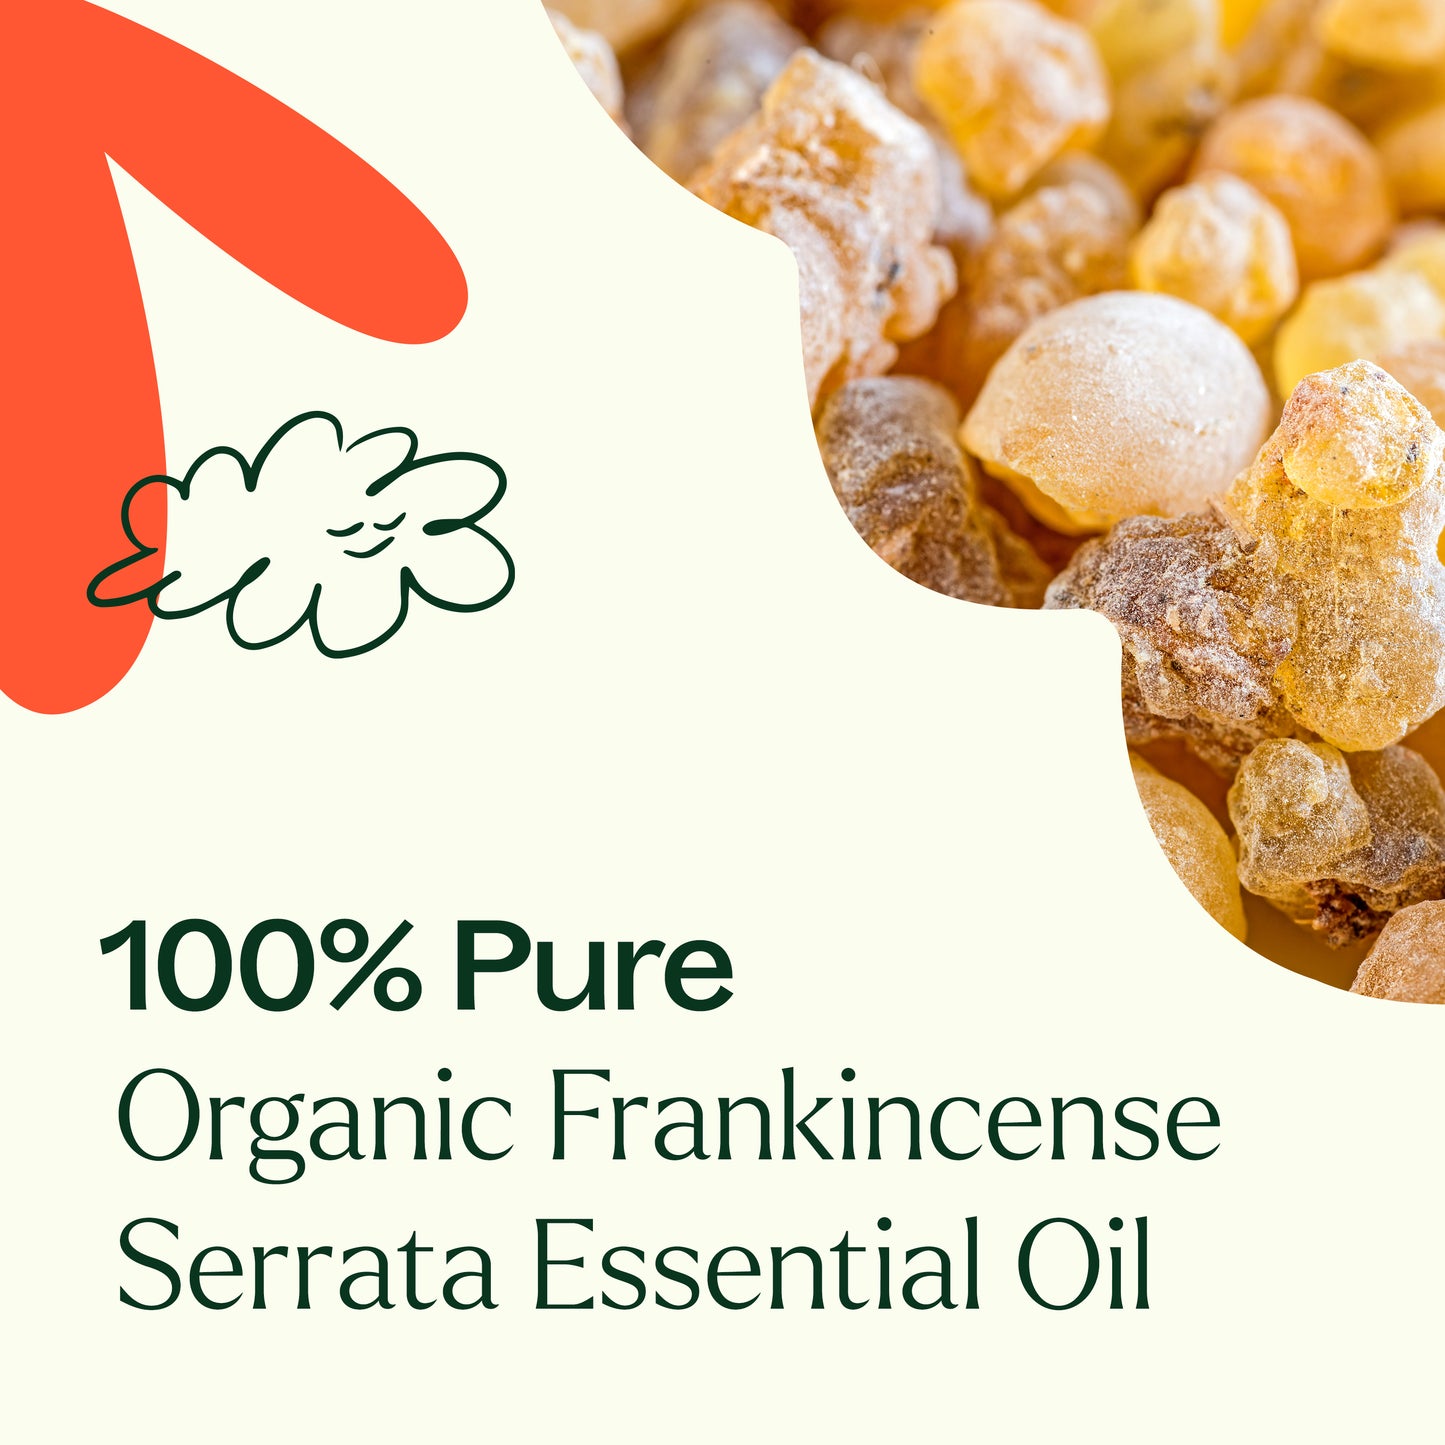 Organic Frankincense Serrata Essential Oil are 100% pure